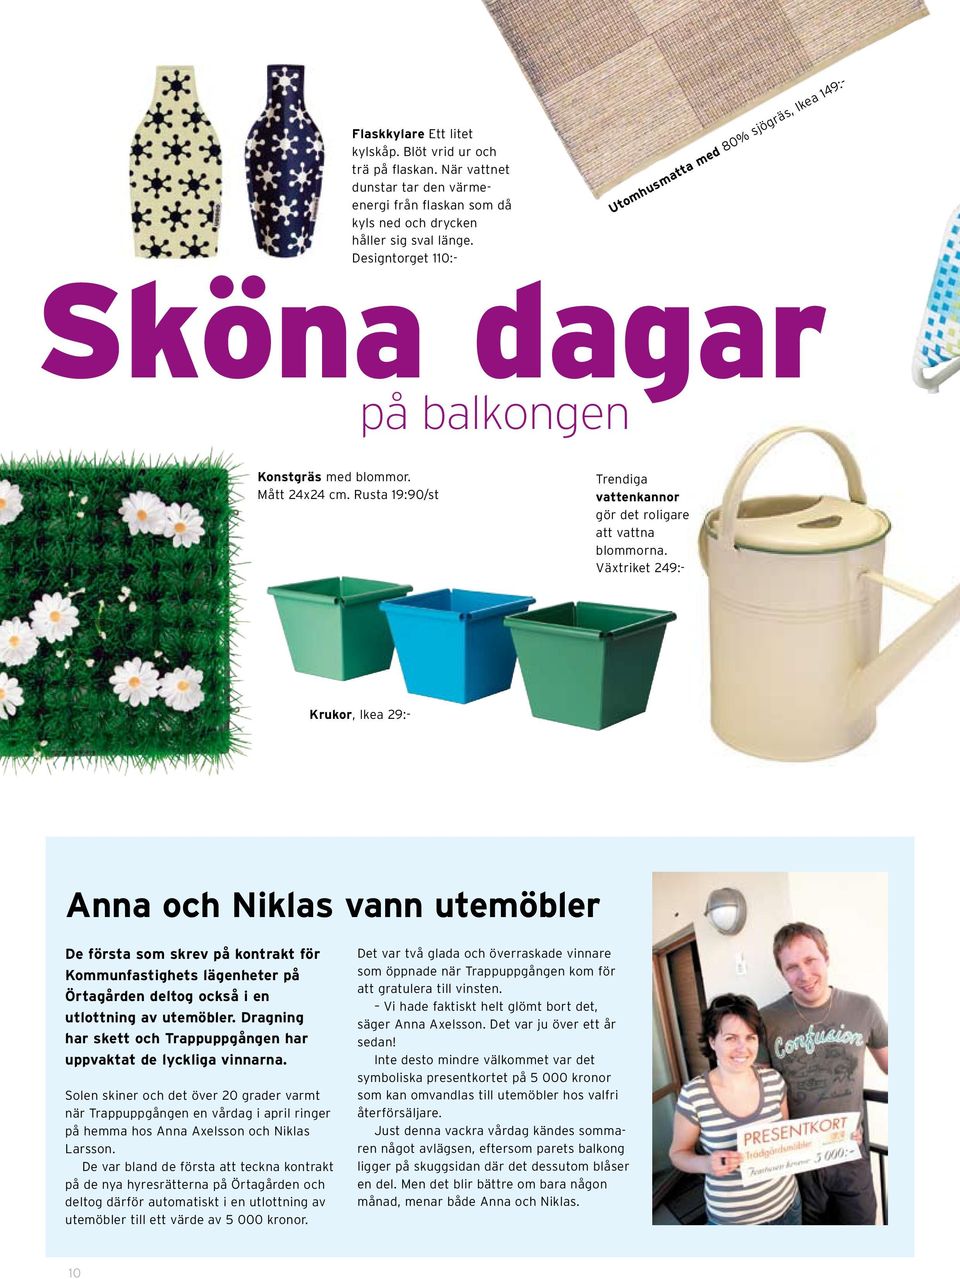 Växtriket 249:- Krukor, Ikea 29:- Anna och Niklas vann utemöbler De första som skrev på kontrakt för Kommunfastighets lägenheter på Örtagården deltog också i en utlottning av utemöbler.